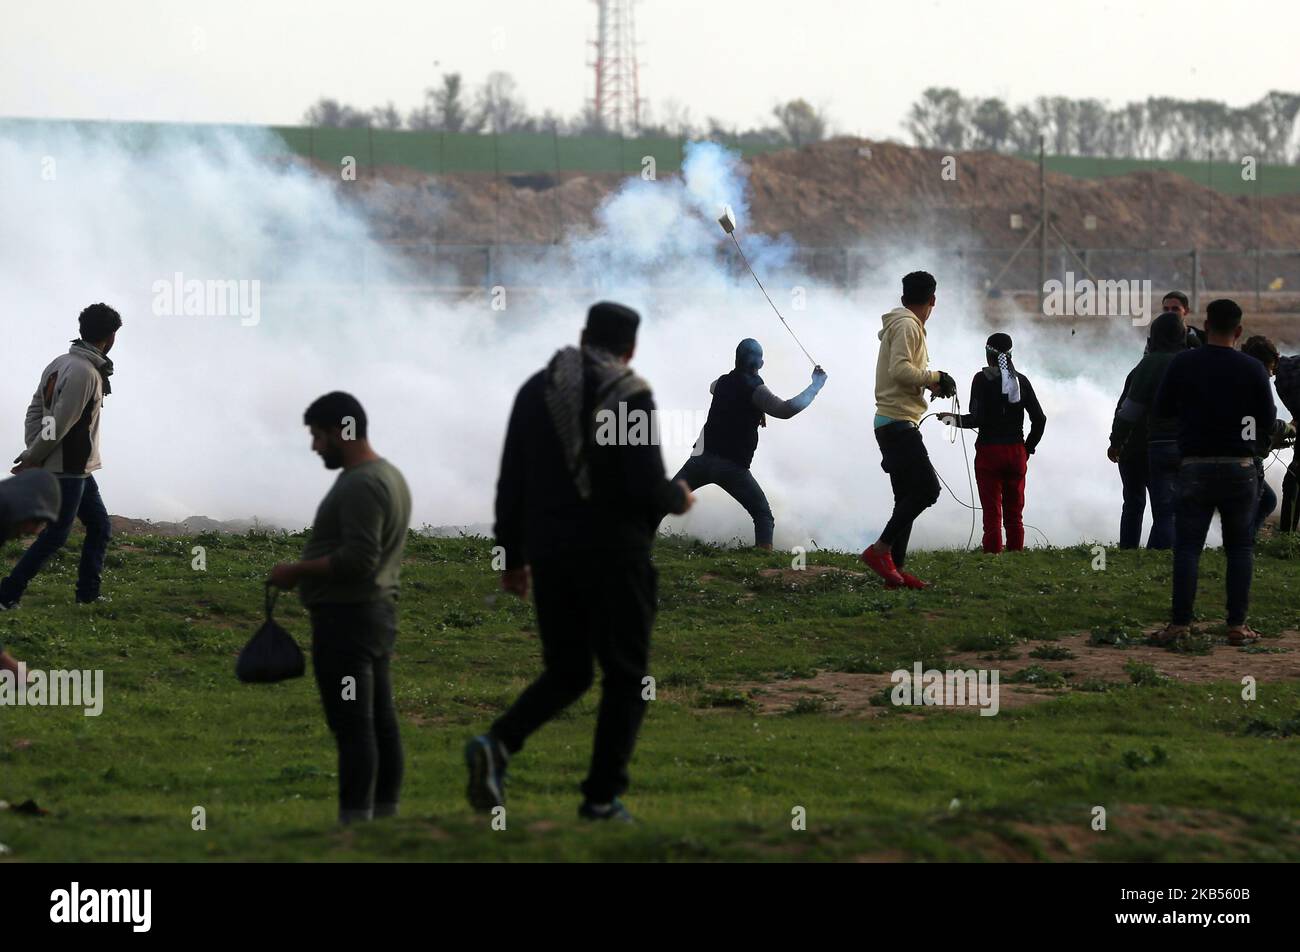 Un dimostratore palestinese lancia un barattolo di gas lacrimogeno sparato dalle forze israeliane durante una protesta contro la barriera di confine Israele-Gaza, nella parte orientale di Gaza il 1 febbraio 2019. (Foto di Majdi Fathi/NurPhoto) Foto Stock